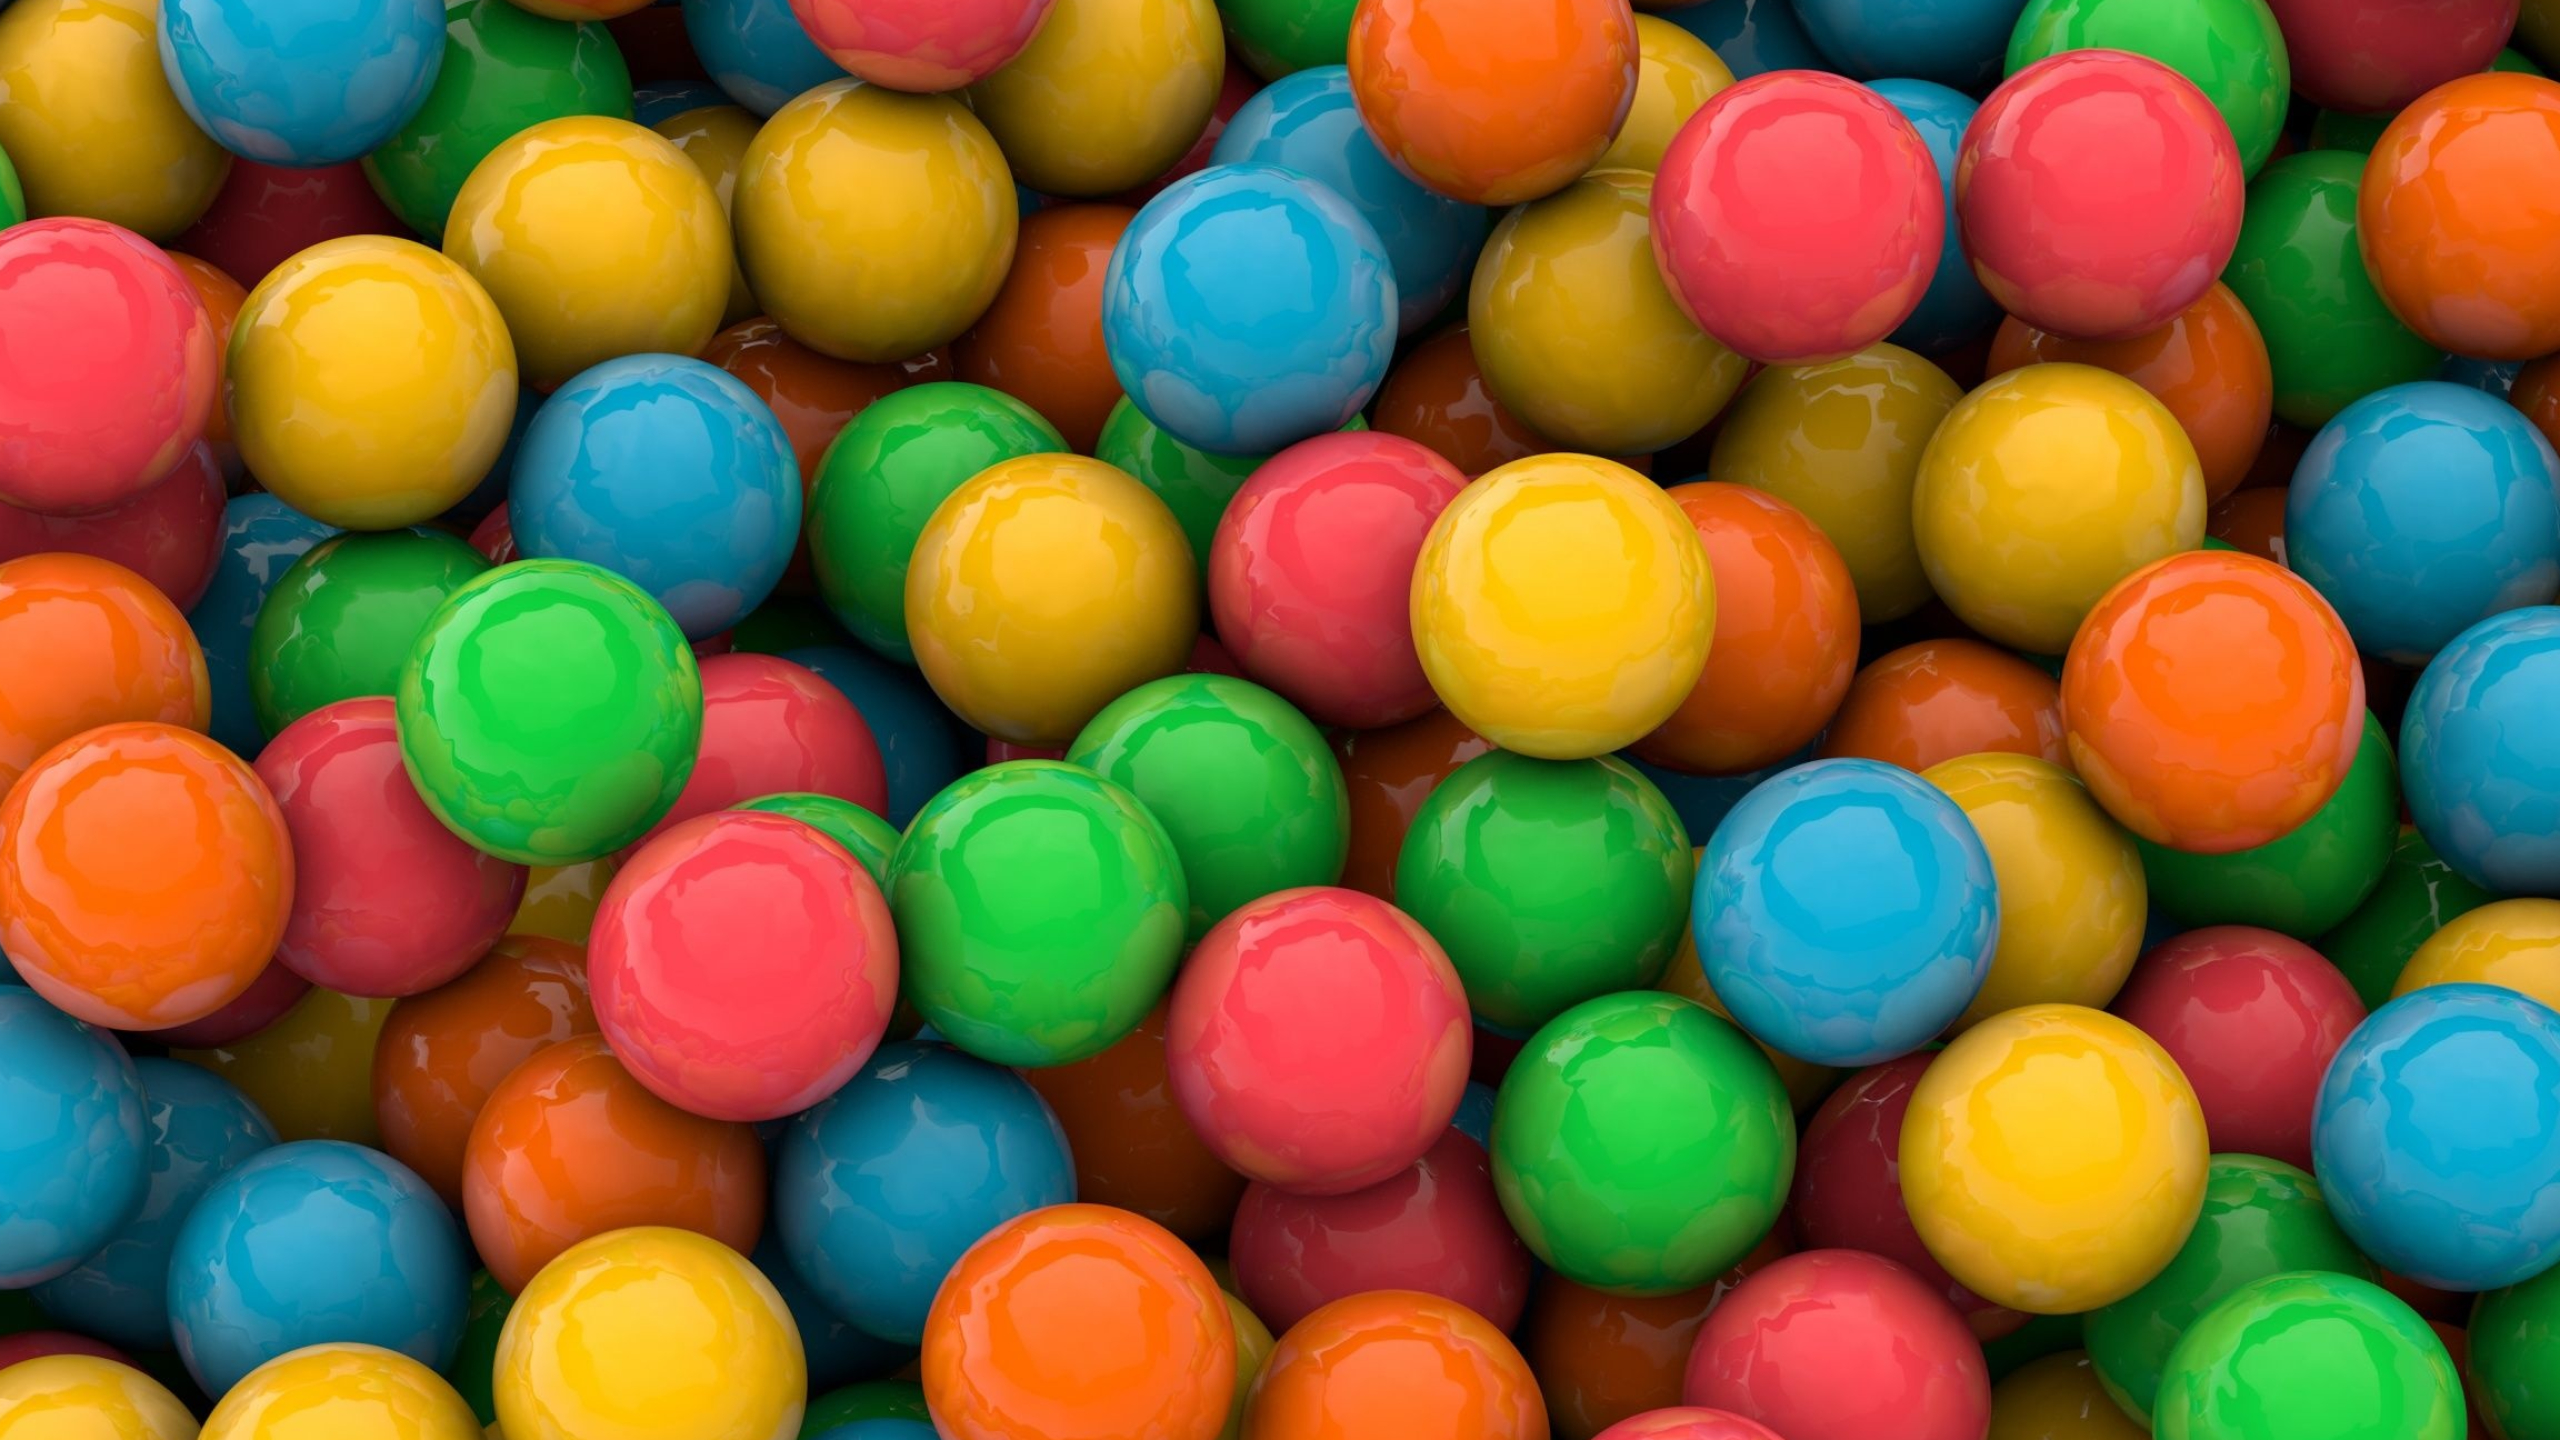 Colorful balls, Bubble gum delight, Sweet treat, Vibrant colors, 2560x1440 HD Desktop